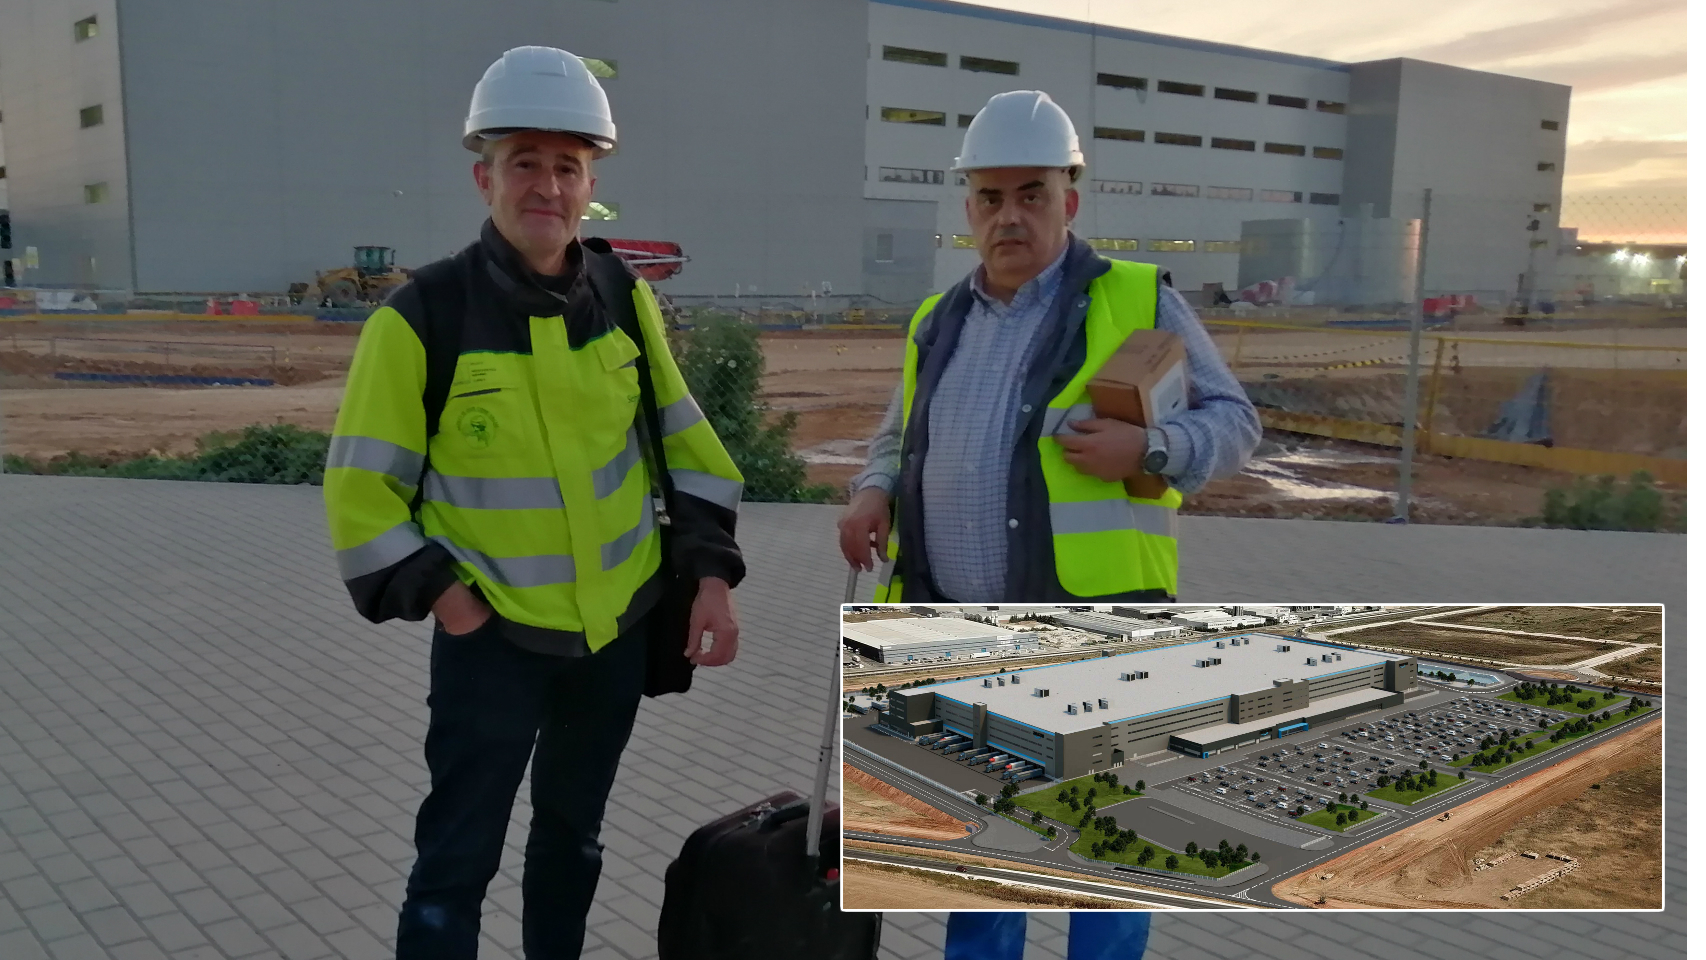 Dos trabajadores del nuevo proyecto de Amazon en Dos Hermanas (Sevilla)